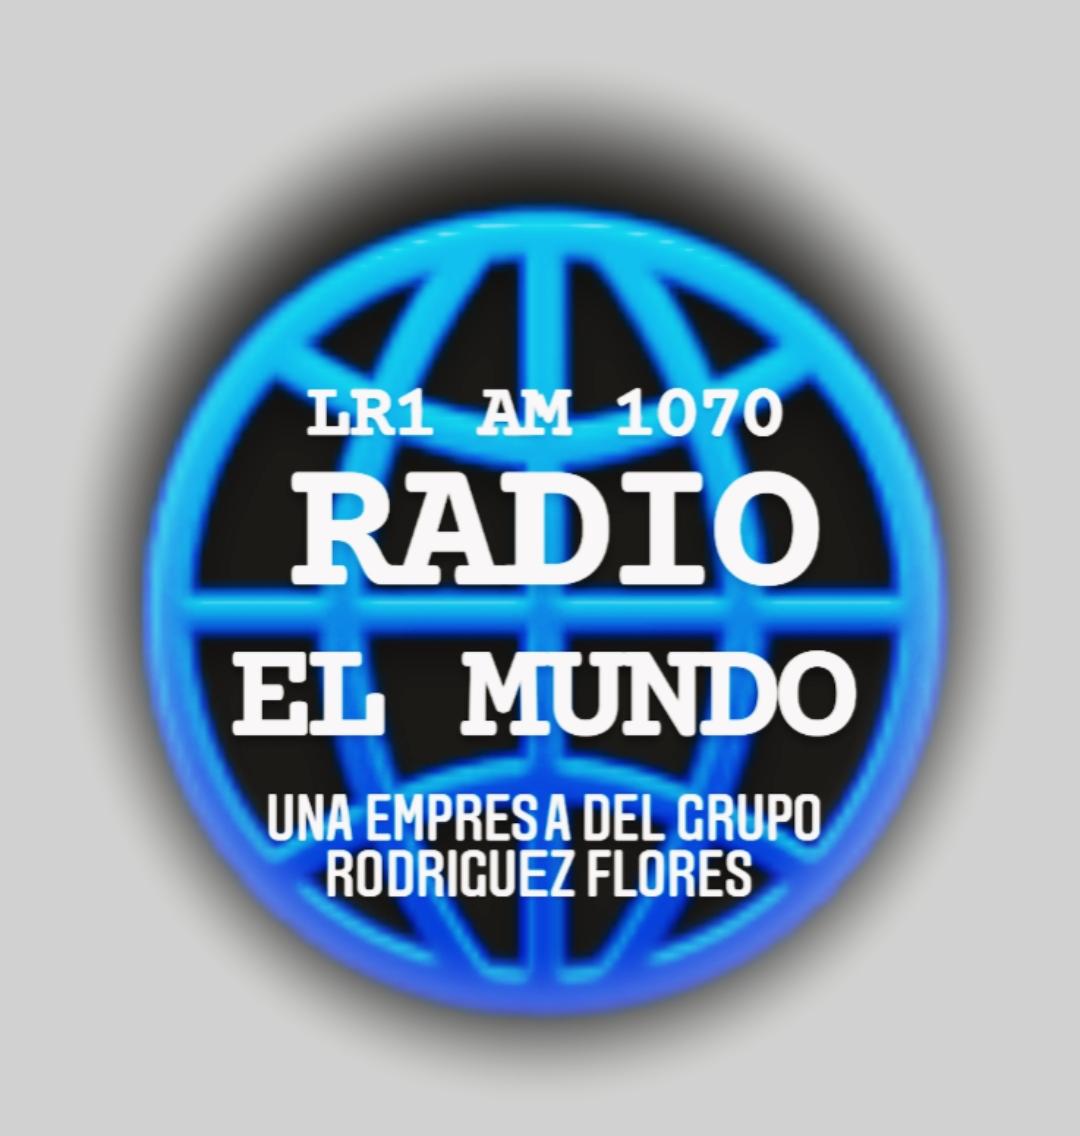 Radio El Mundo - AM 1070